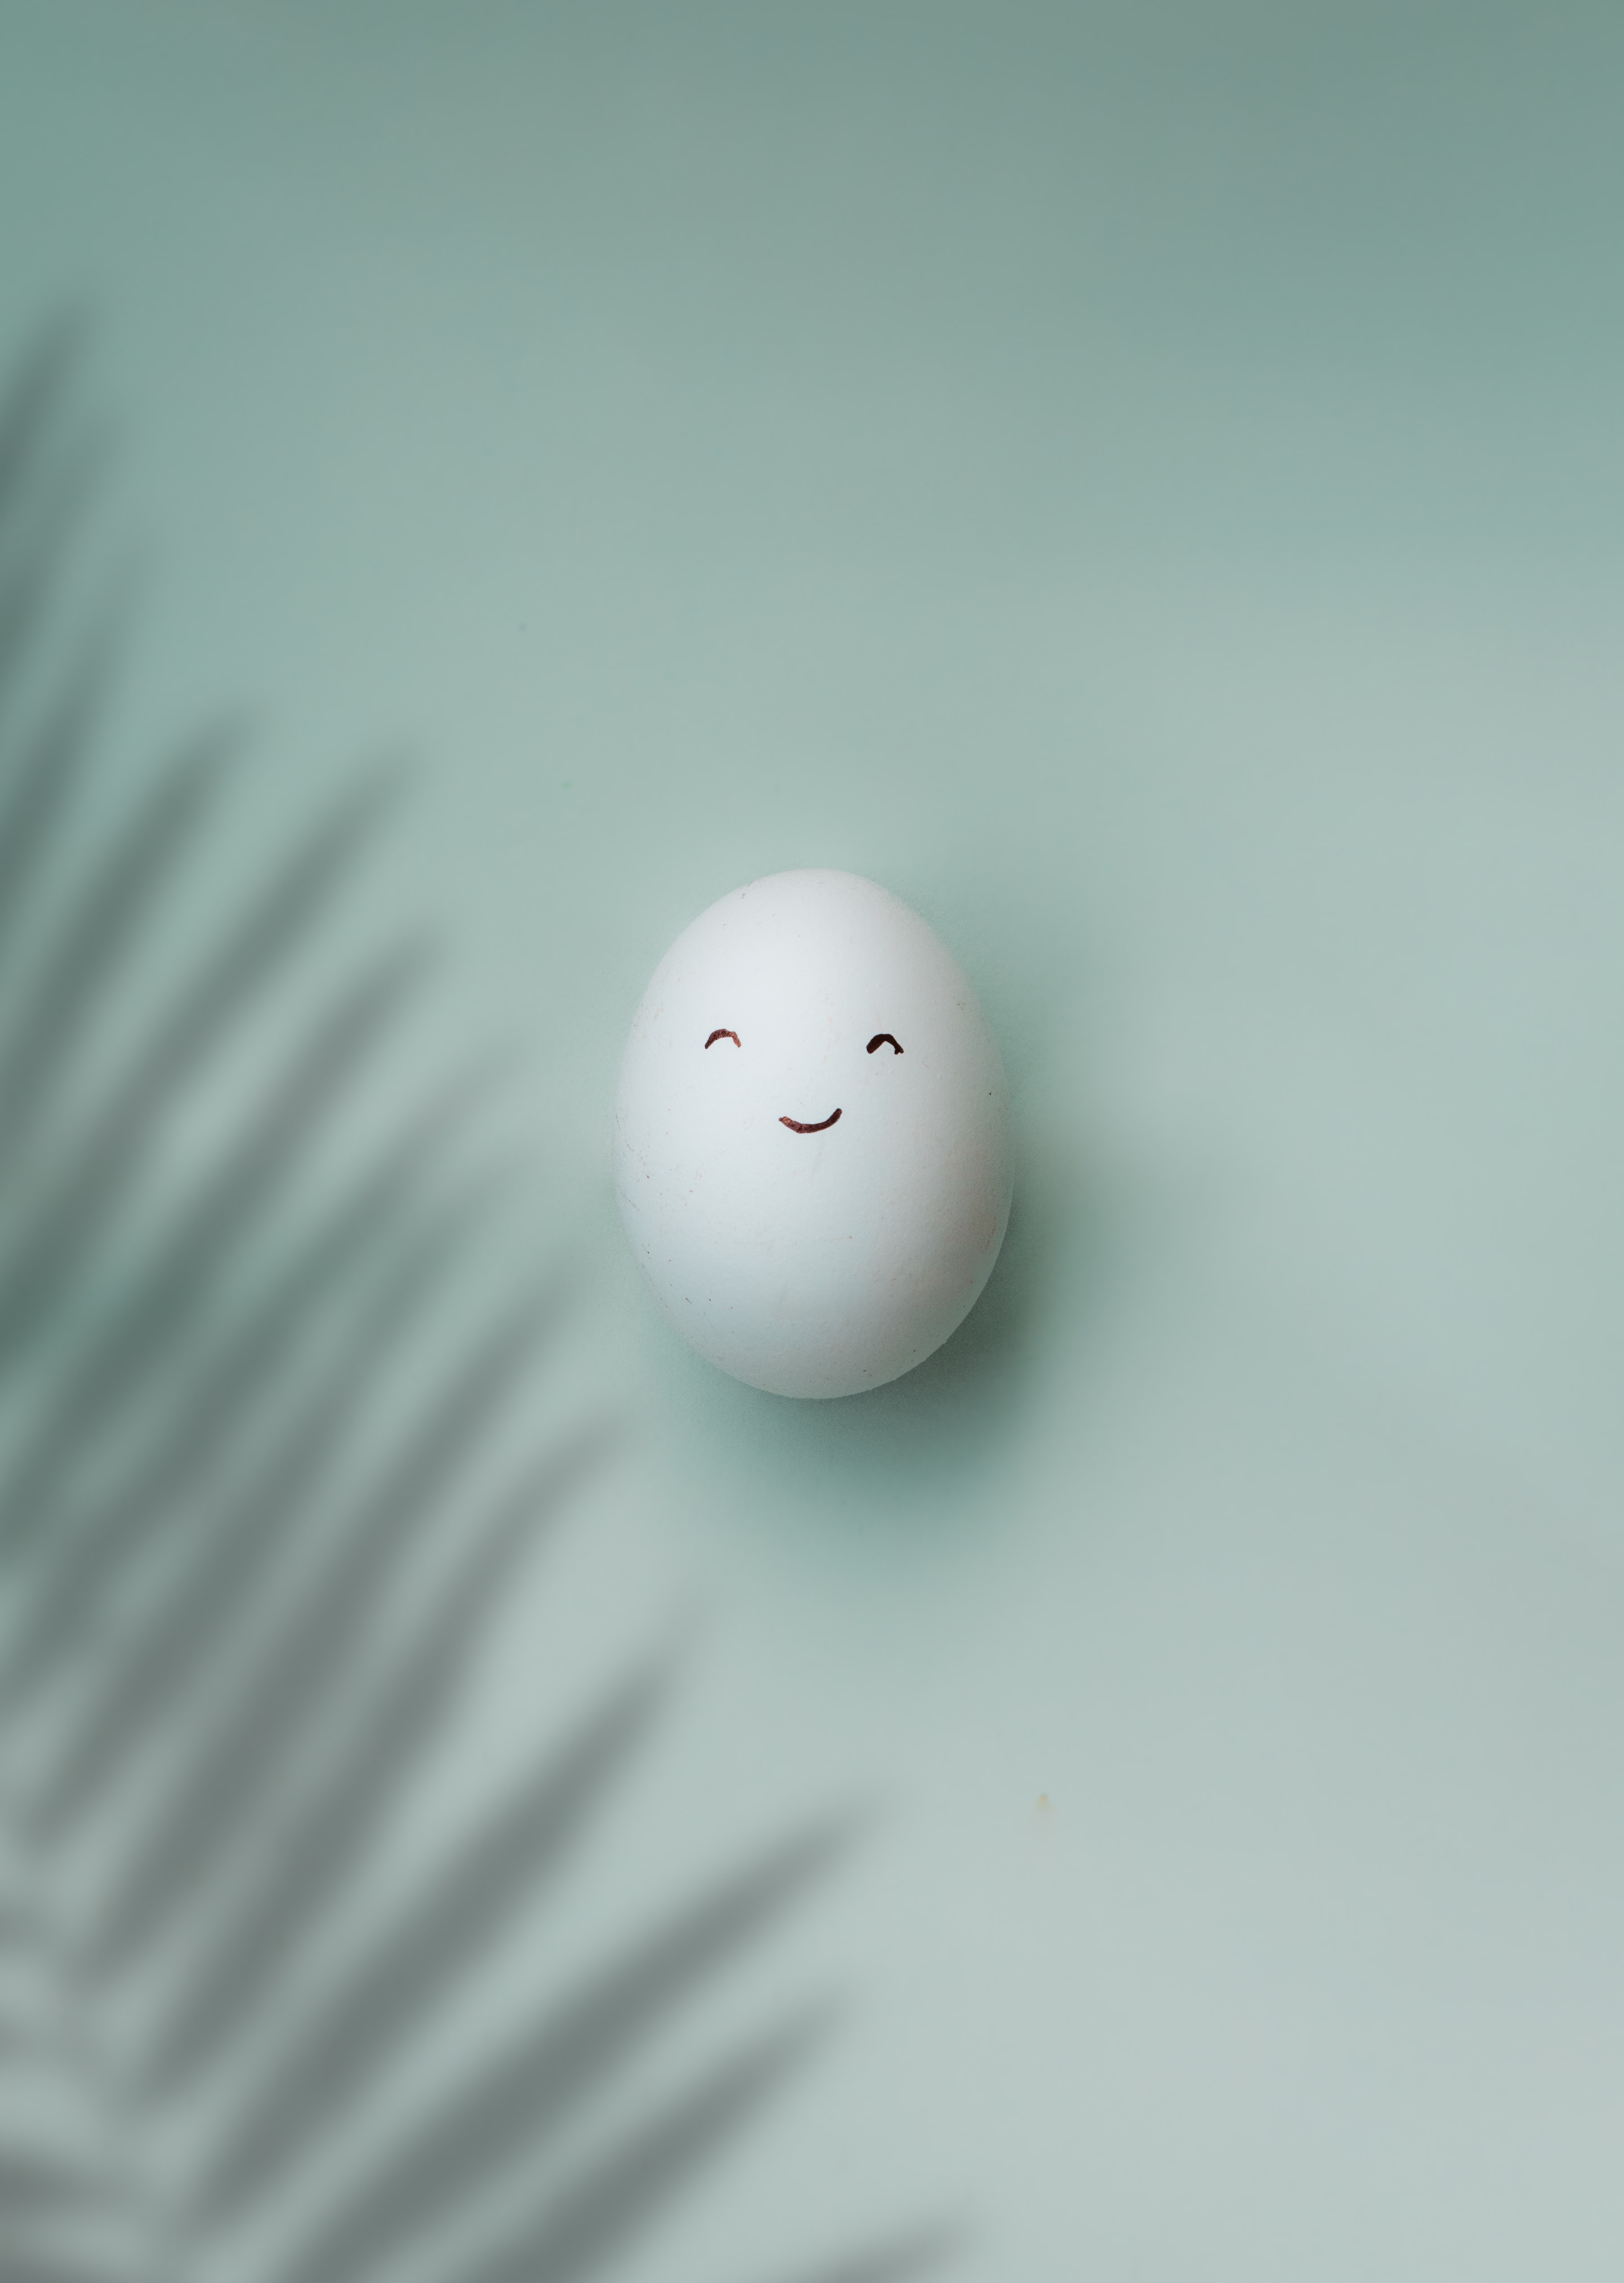 egg, minimalism, white, smile, emoticon, smiley